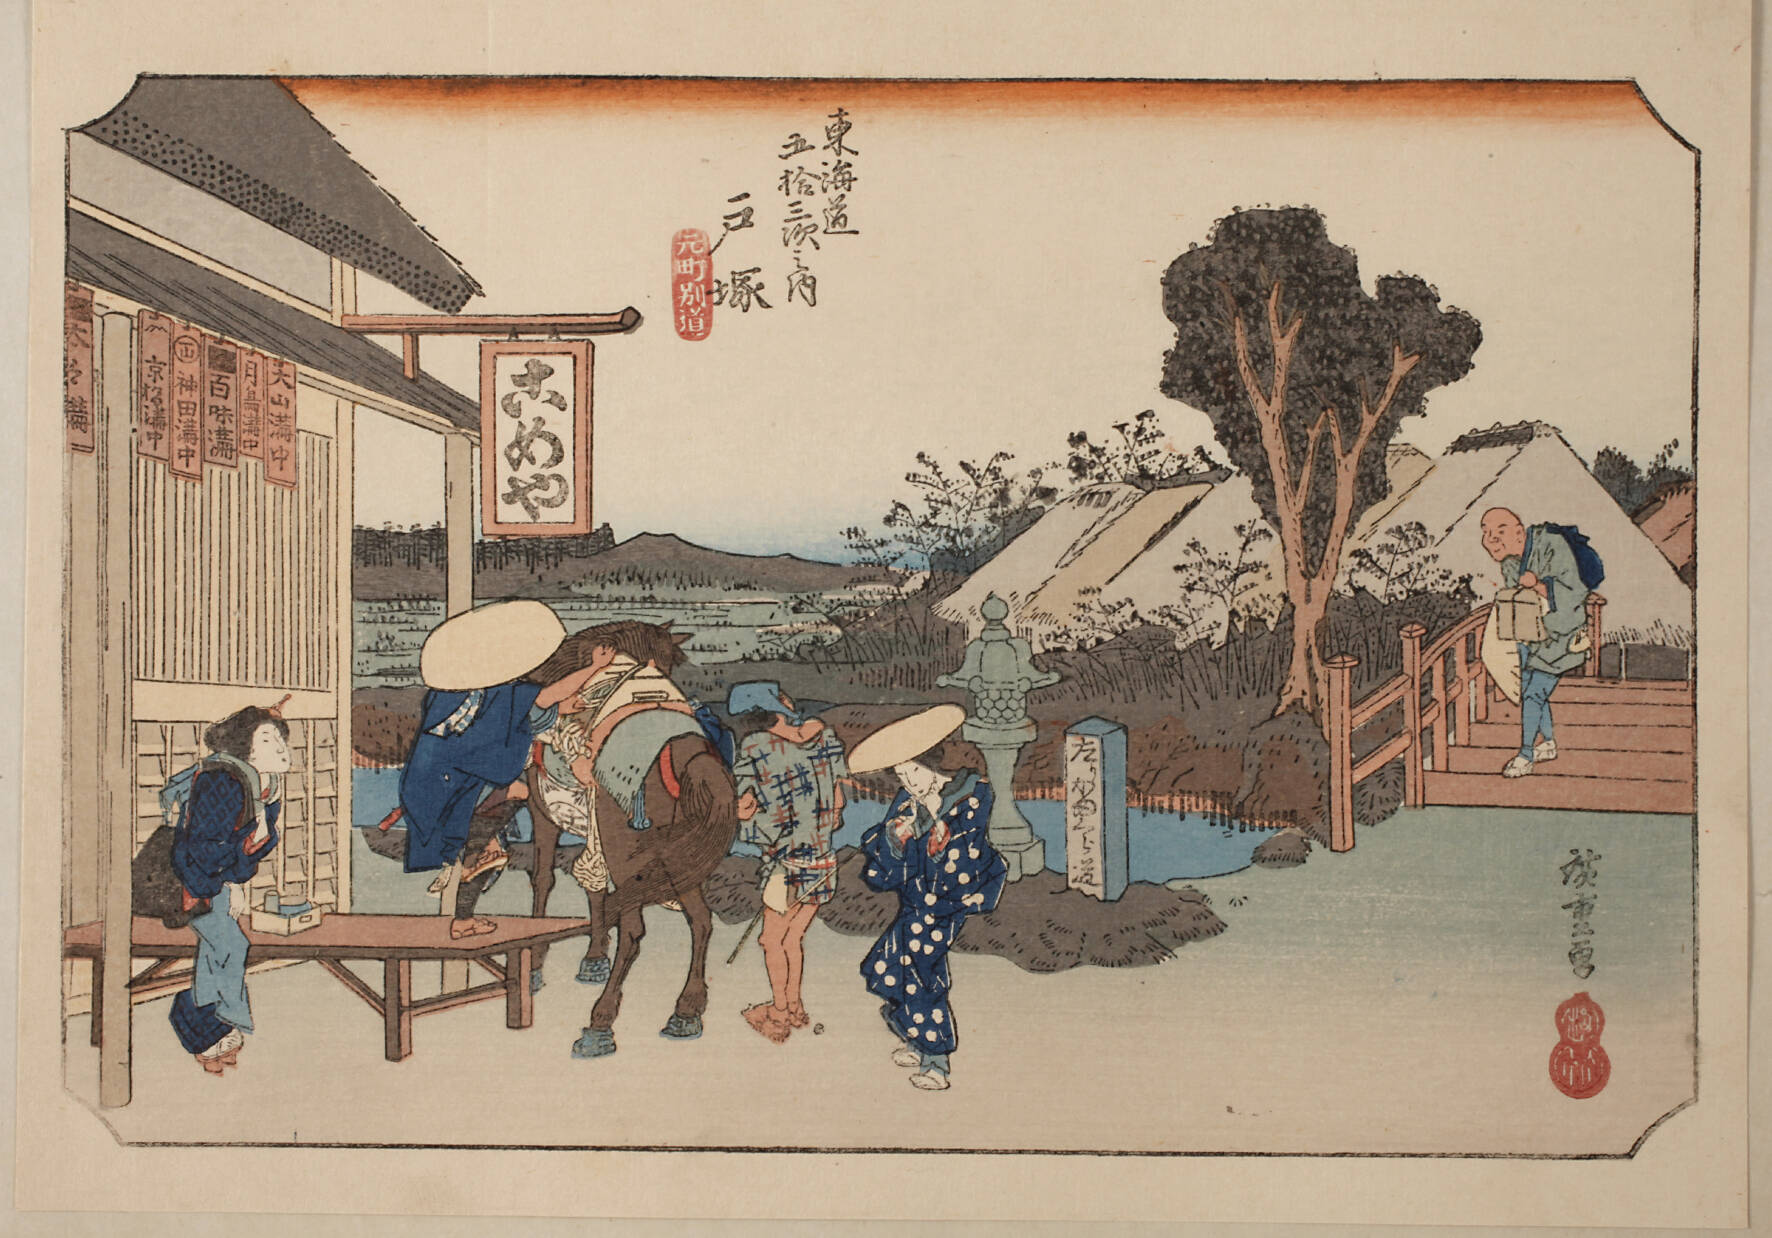 Farbholzschnitt Ando Hiroshige